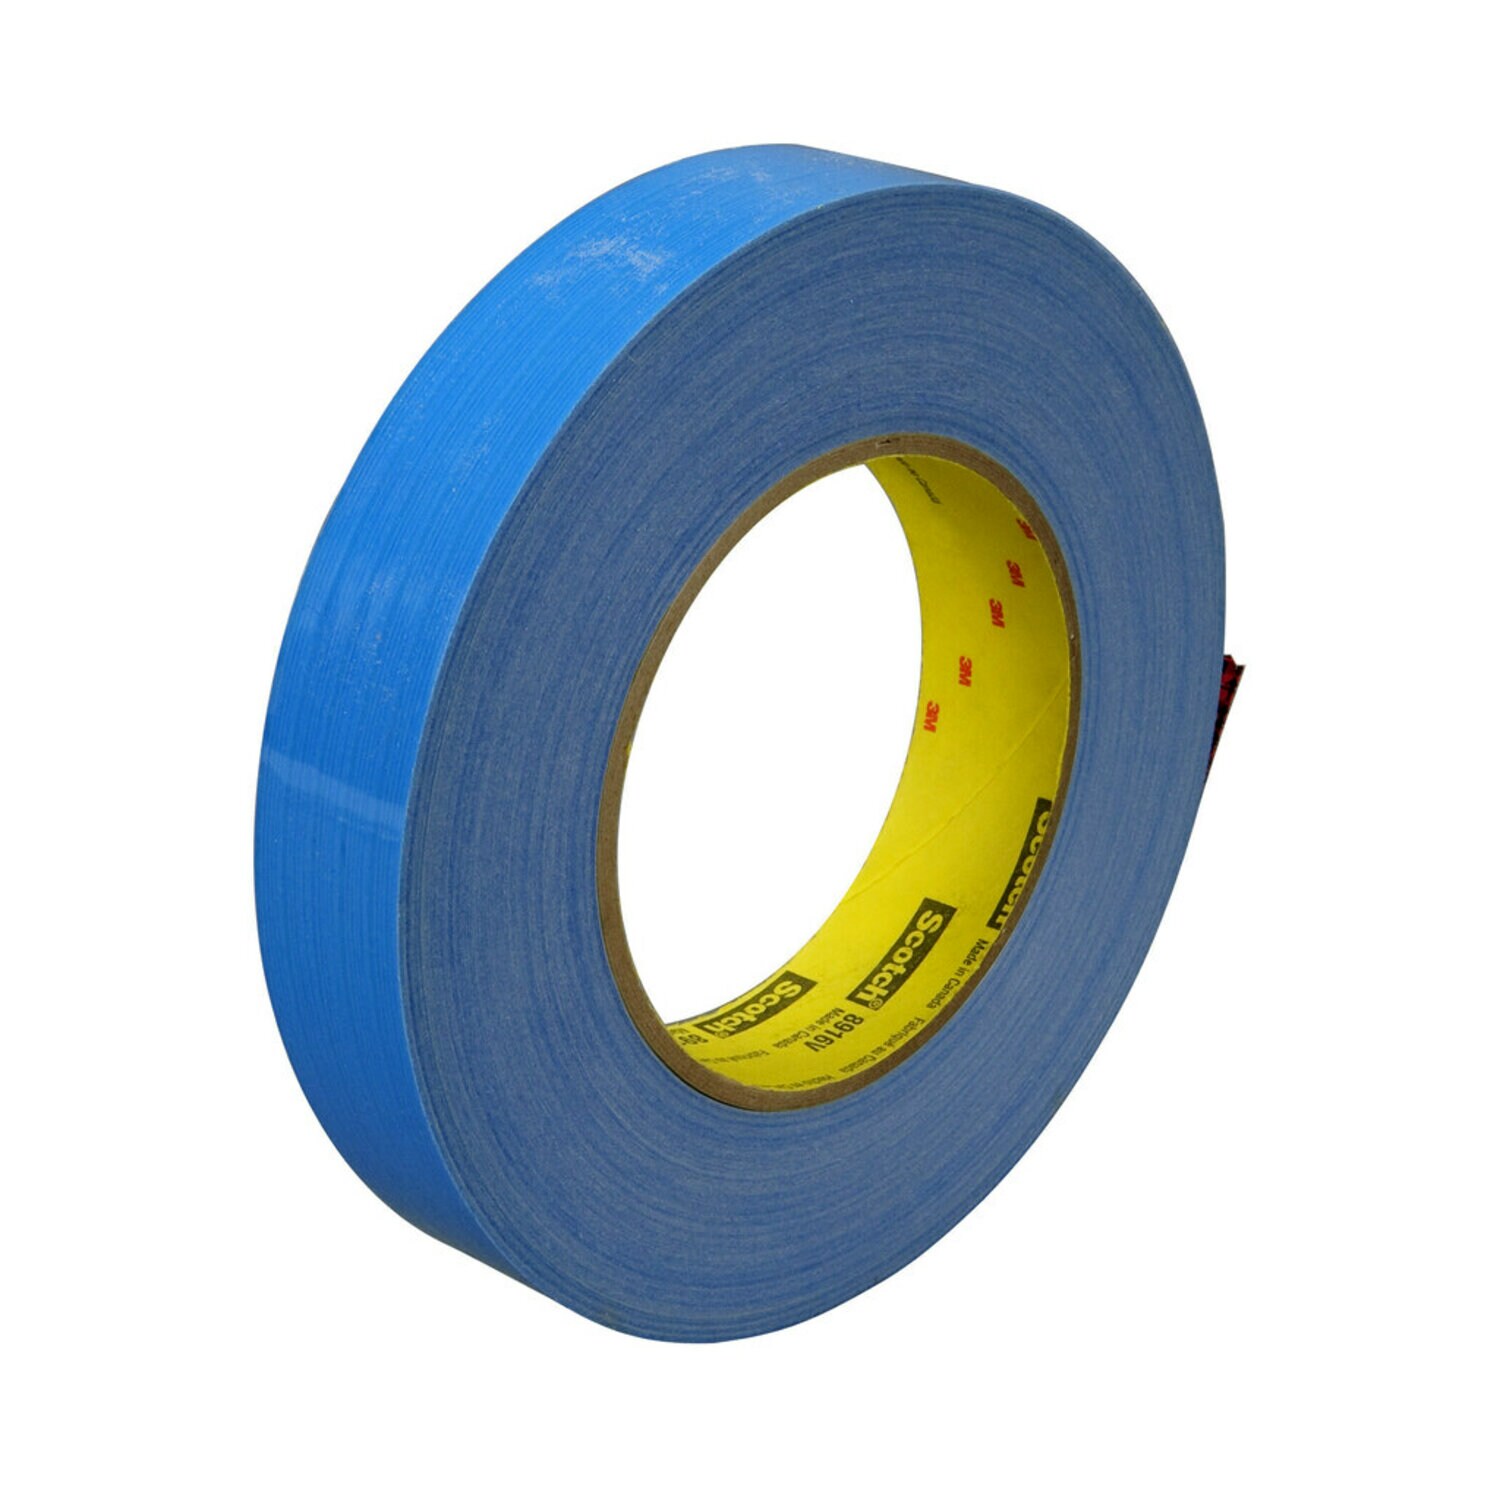 7000123853 - Scotch Filament Tape 8916V, Blue, 18 mm x 55 m, 6.8 mil, 6.8 mil, 48
rolls per case